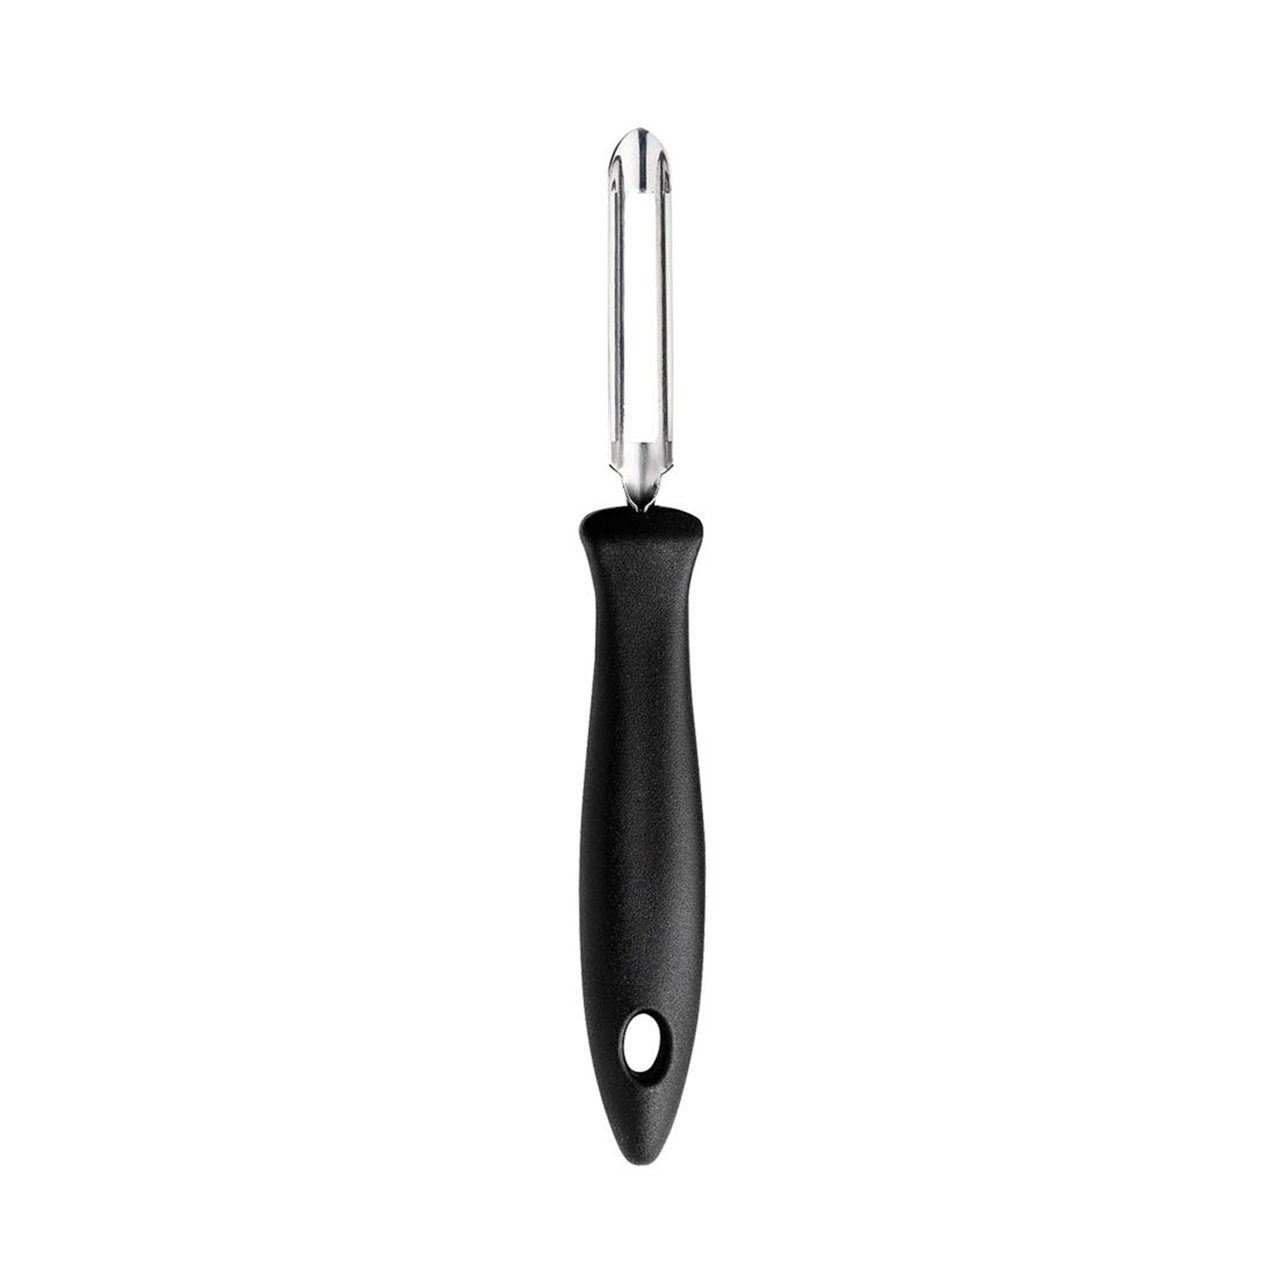 https://royaldesign.com/image/2/fiskars-essential-potato-peeler-with-movable-blade-0?w=800&quality=80